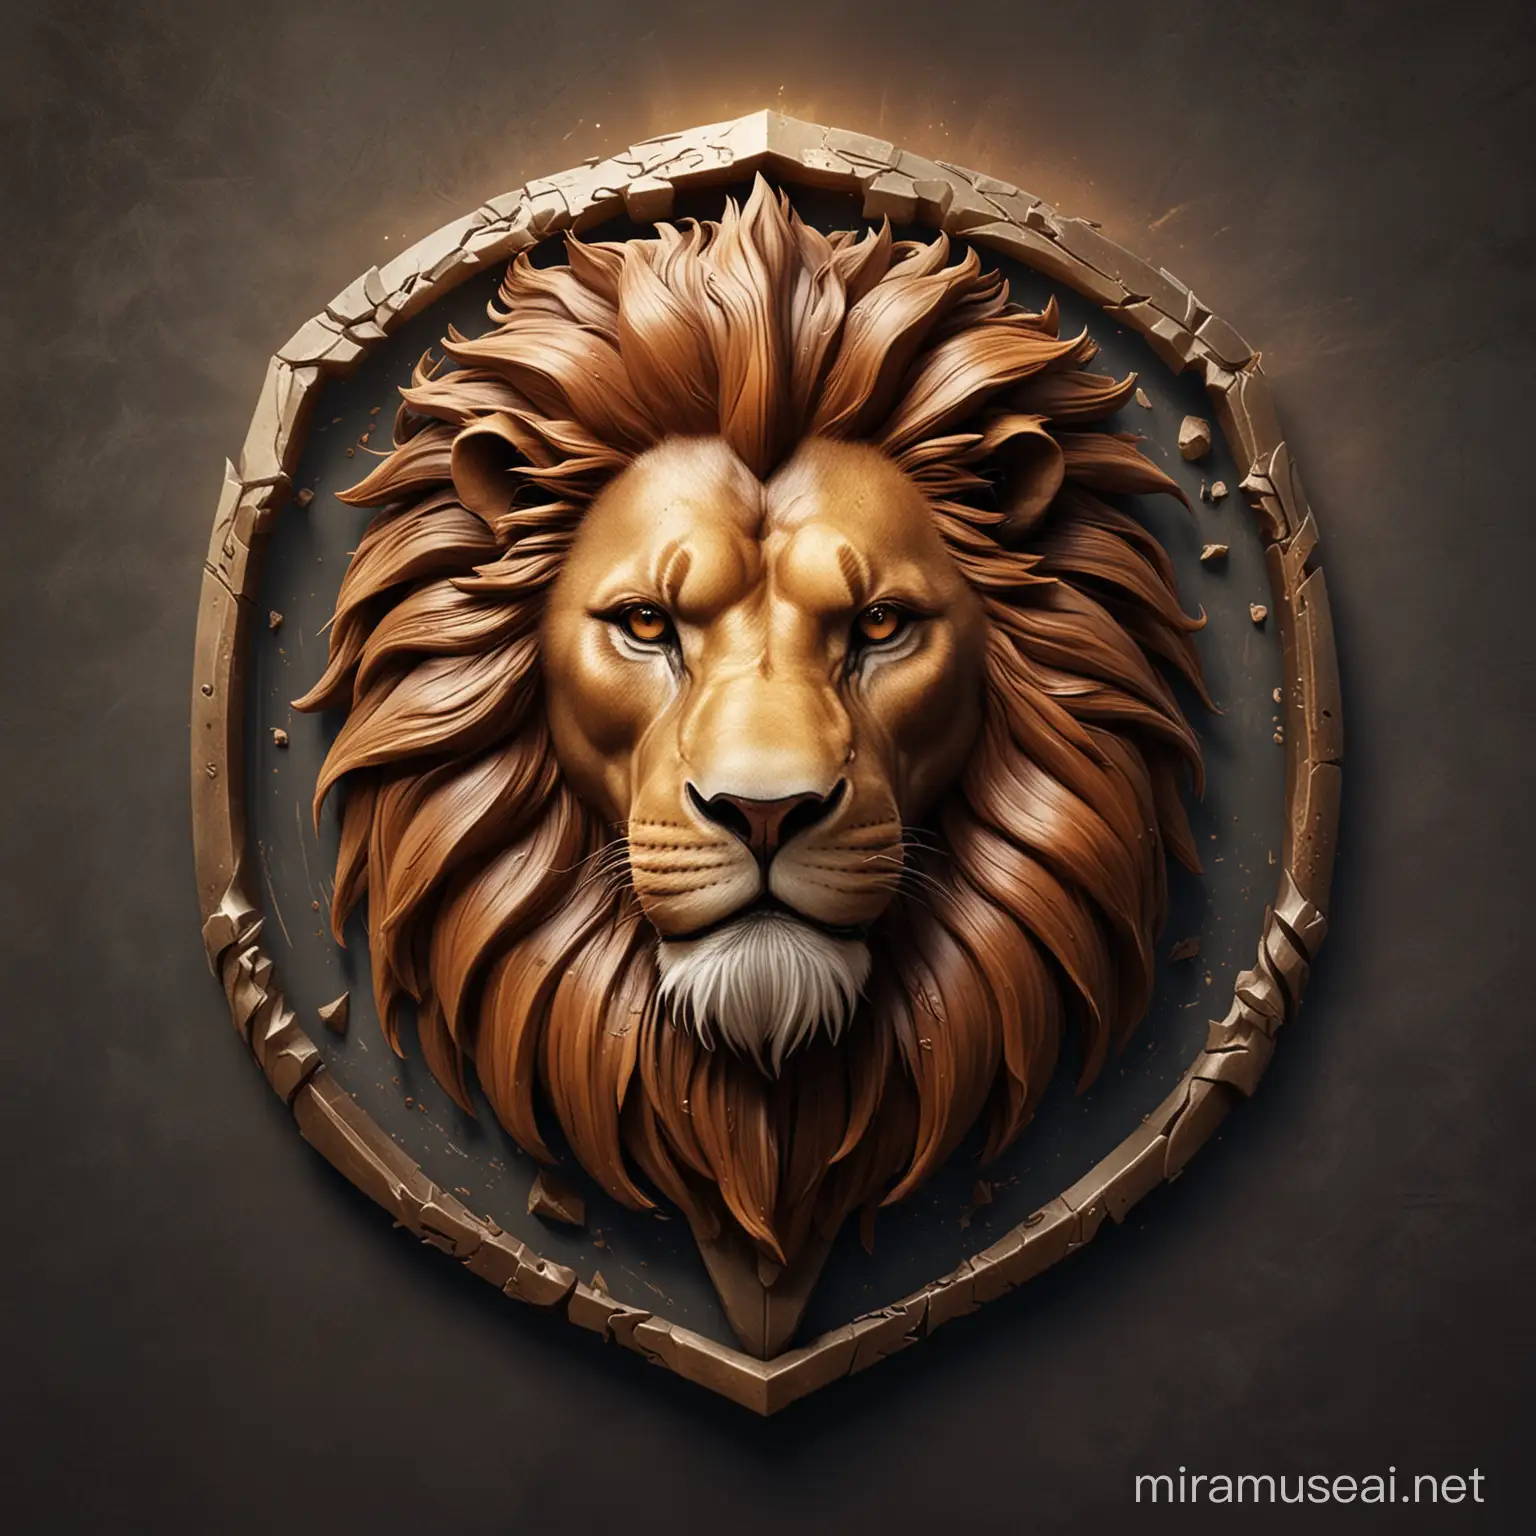 Majestic Lion Silhouette in Dramatic Logo Design